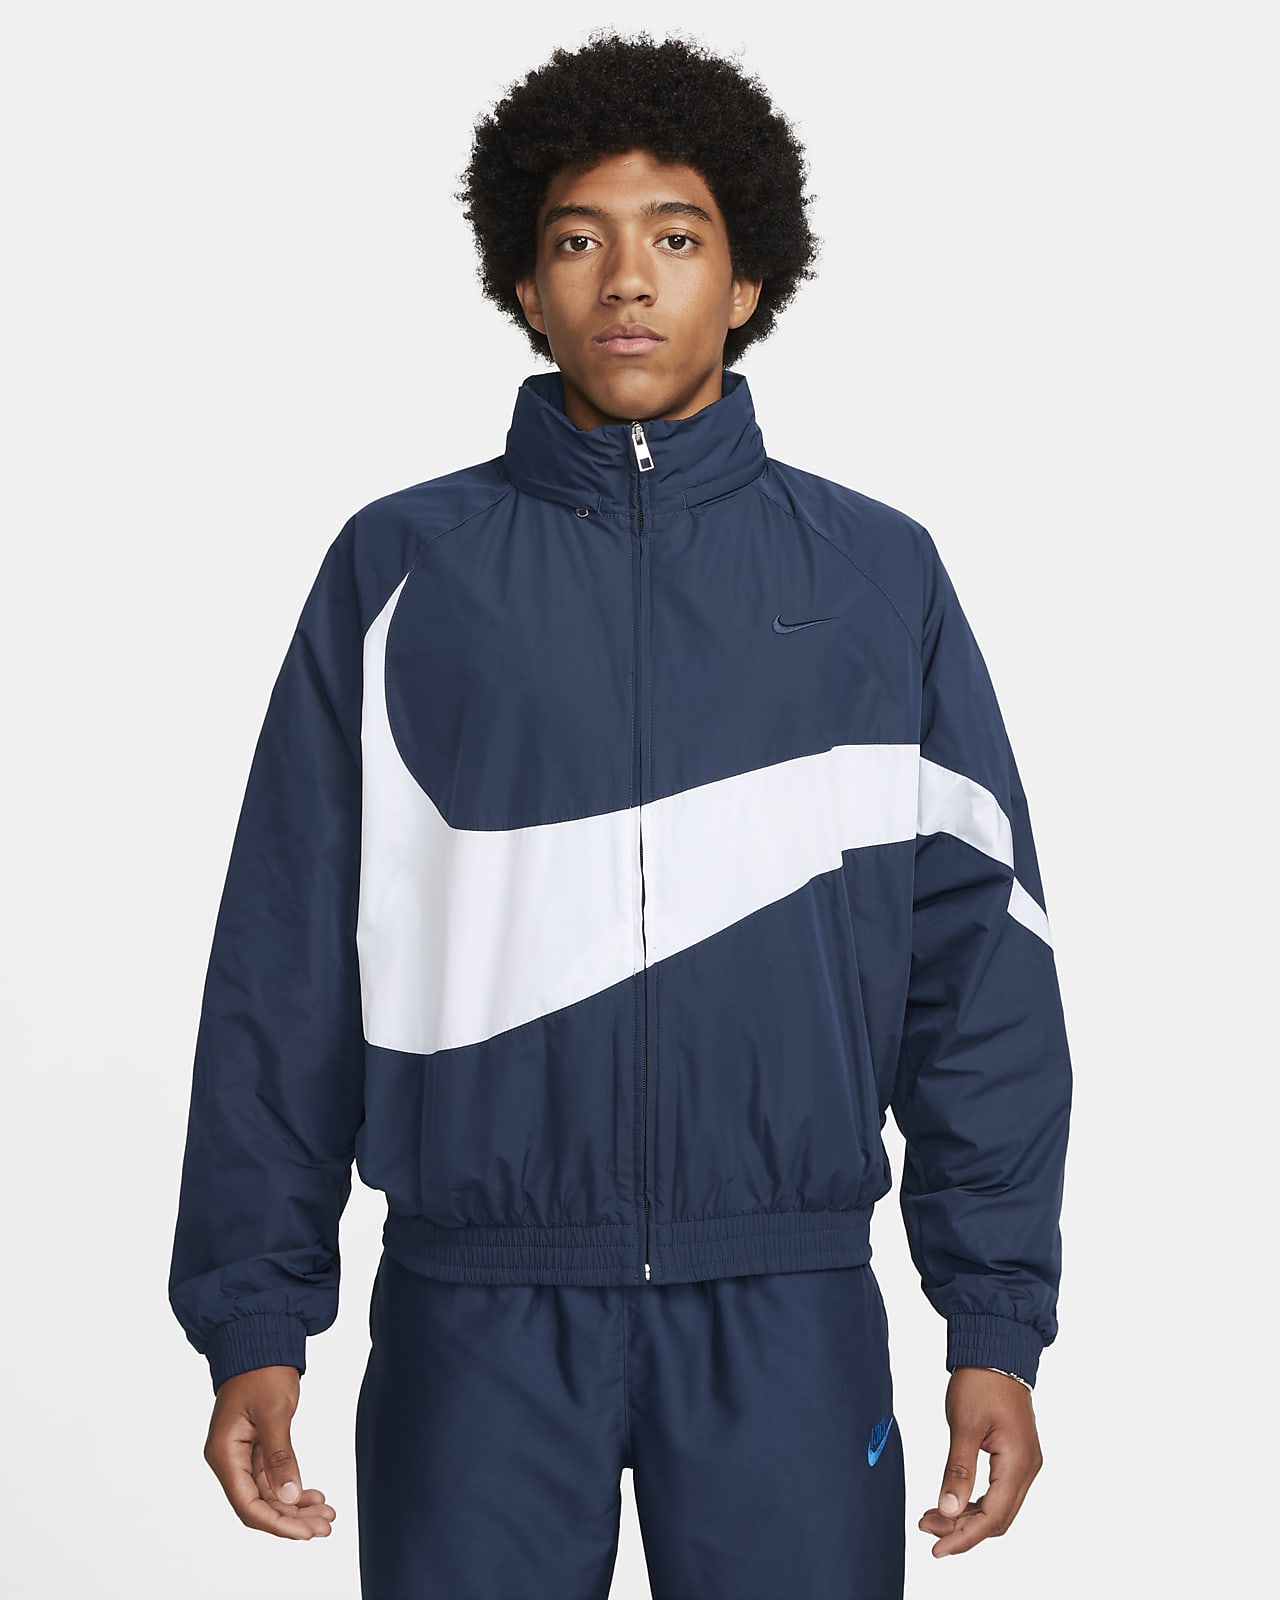 hanger vrije tijd afgewerkt Nike Swoosh Men's Woven Jacket. Nike.com